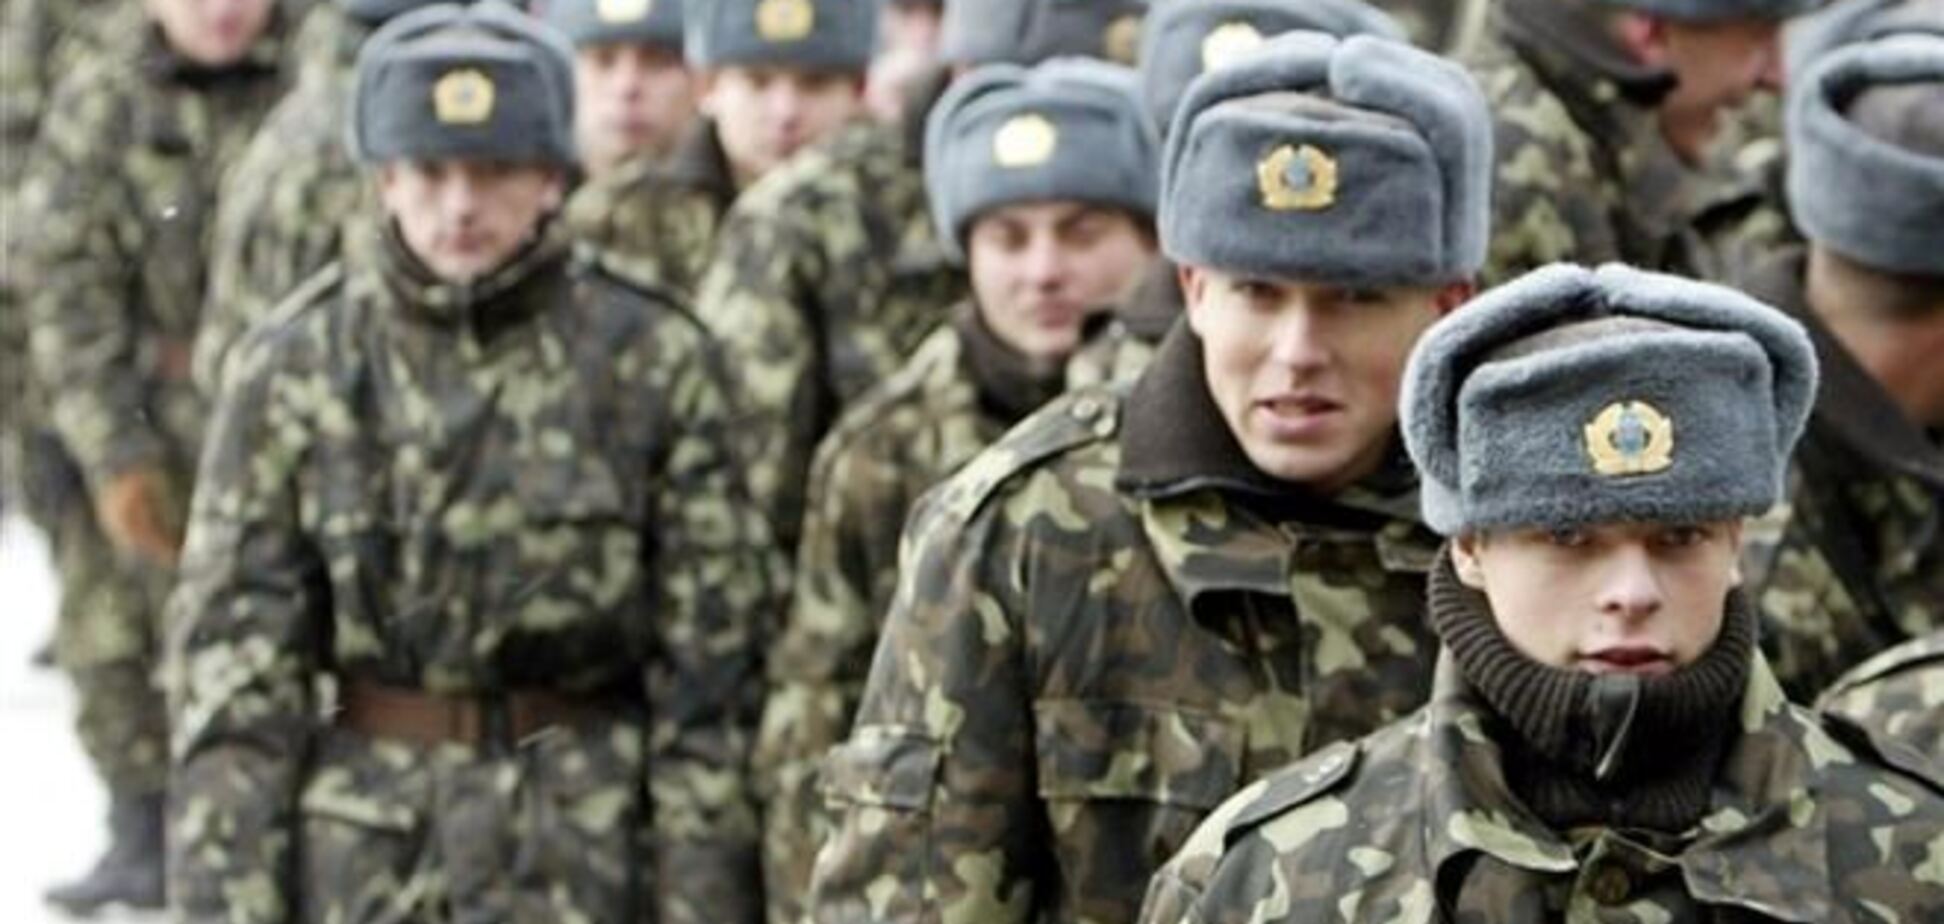 Украина вошла в двадцатку самых военизированных стран мира